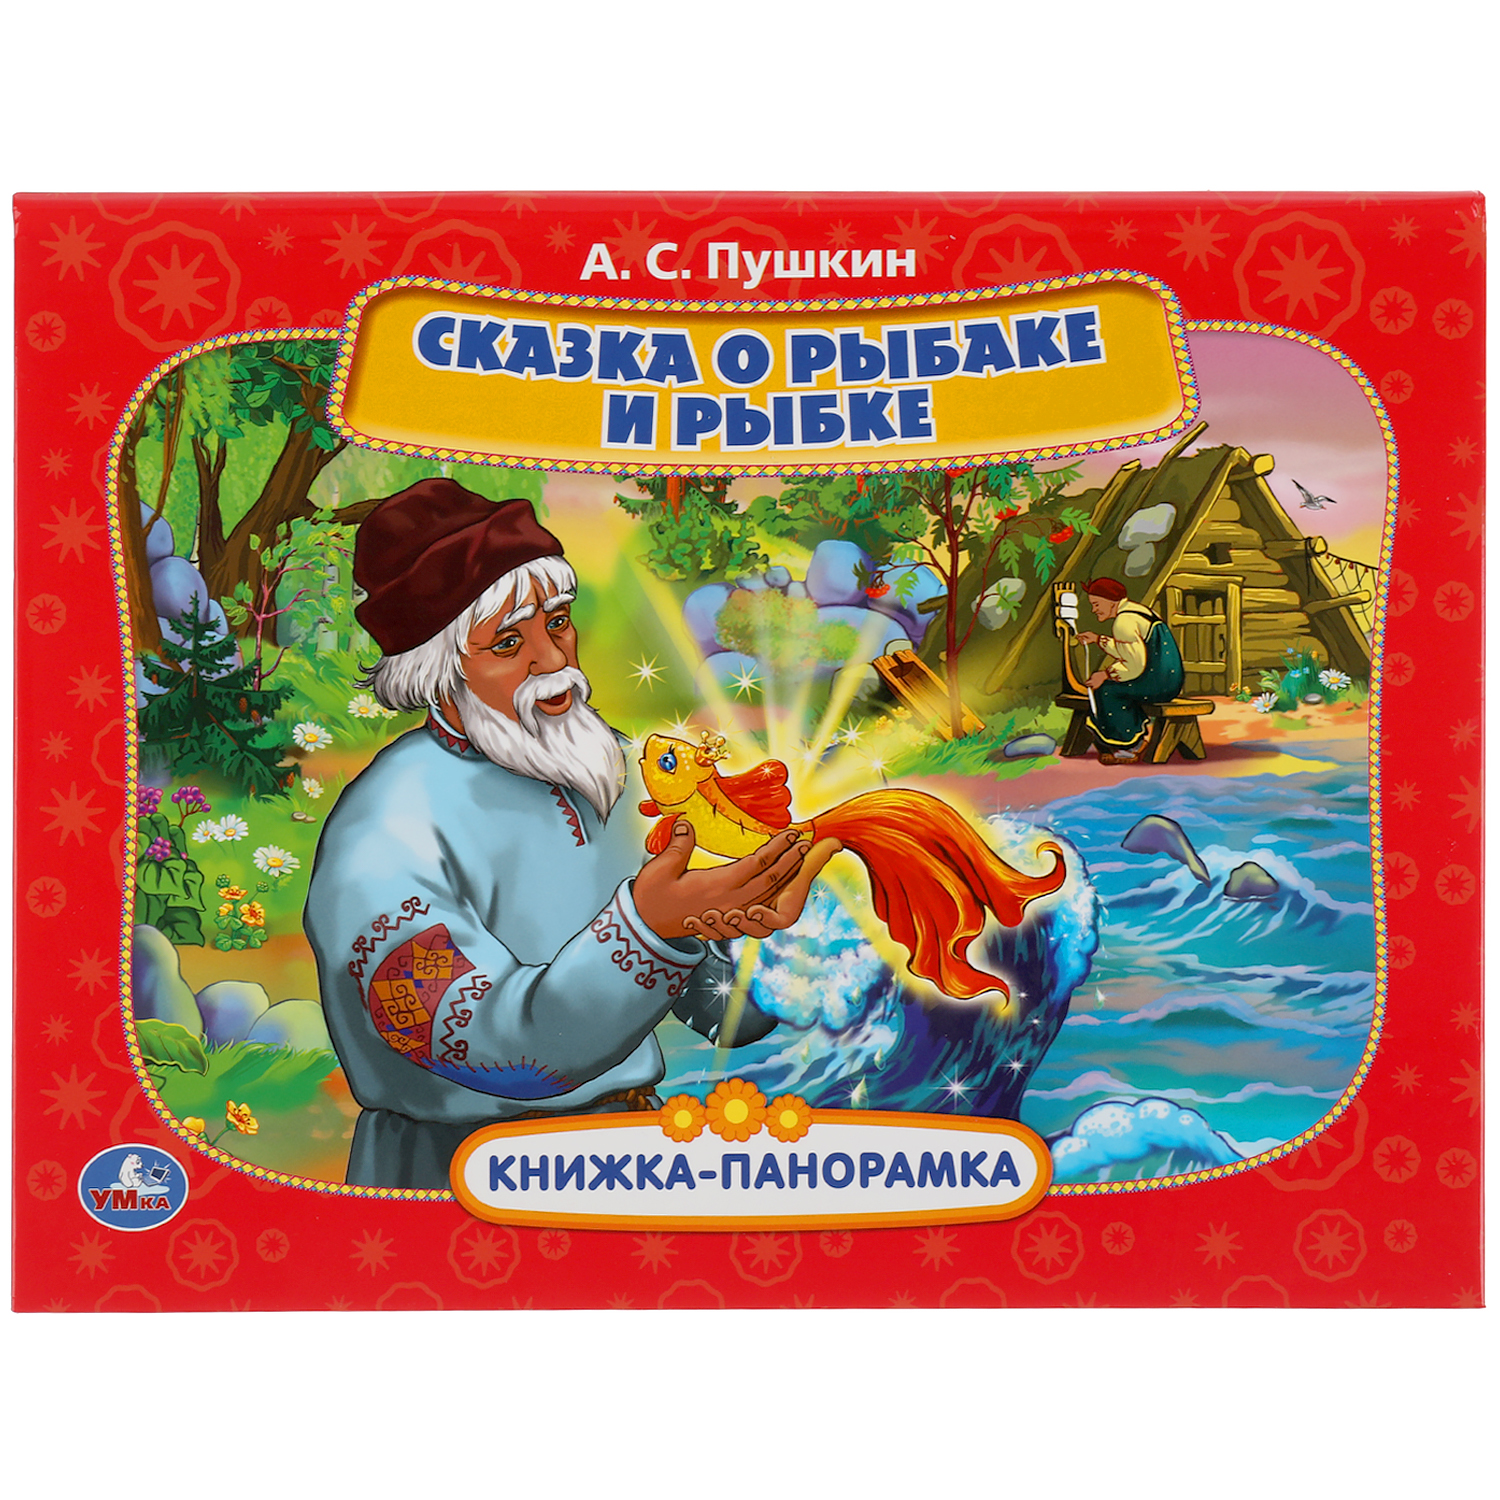 Книга-панорамка УМка Сказка о рыбаке и рыбке Пушкин 308378 - фото 1